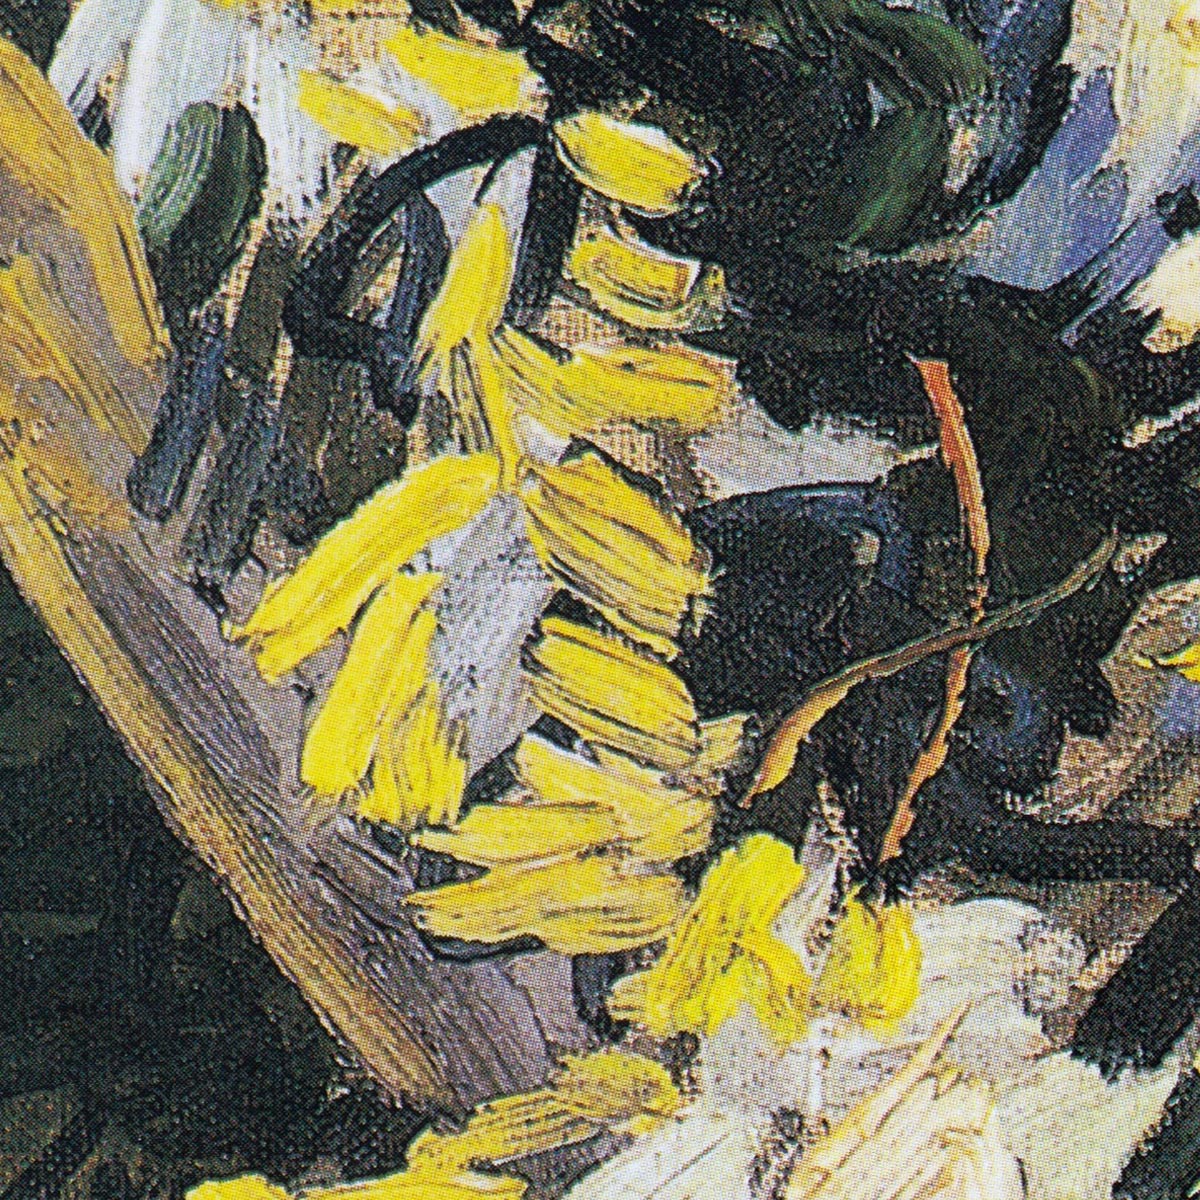 Blossoming Acacia Branches Art Print by Van Gogh